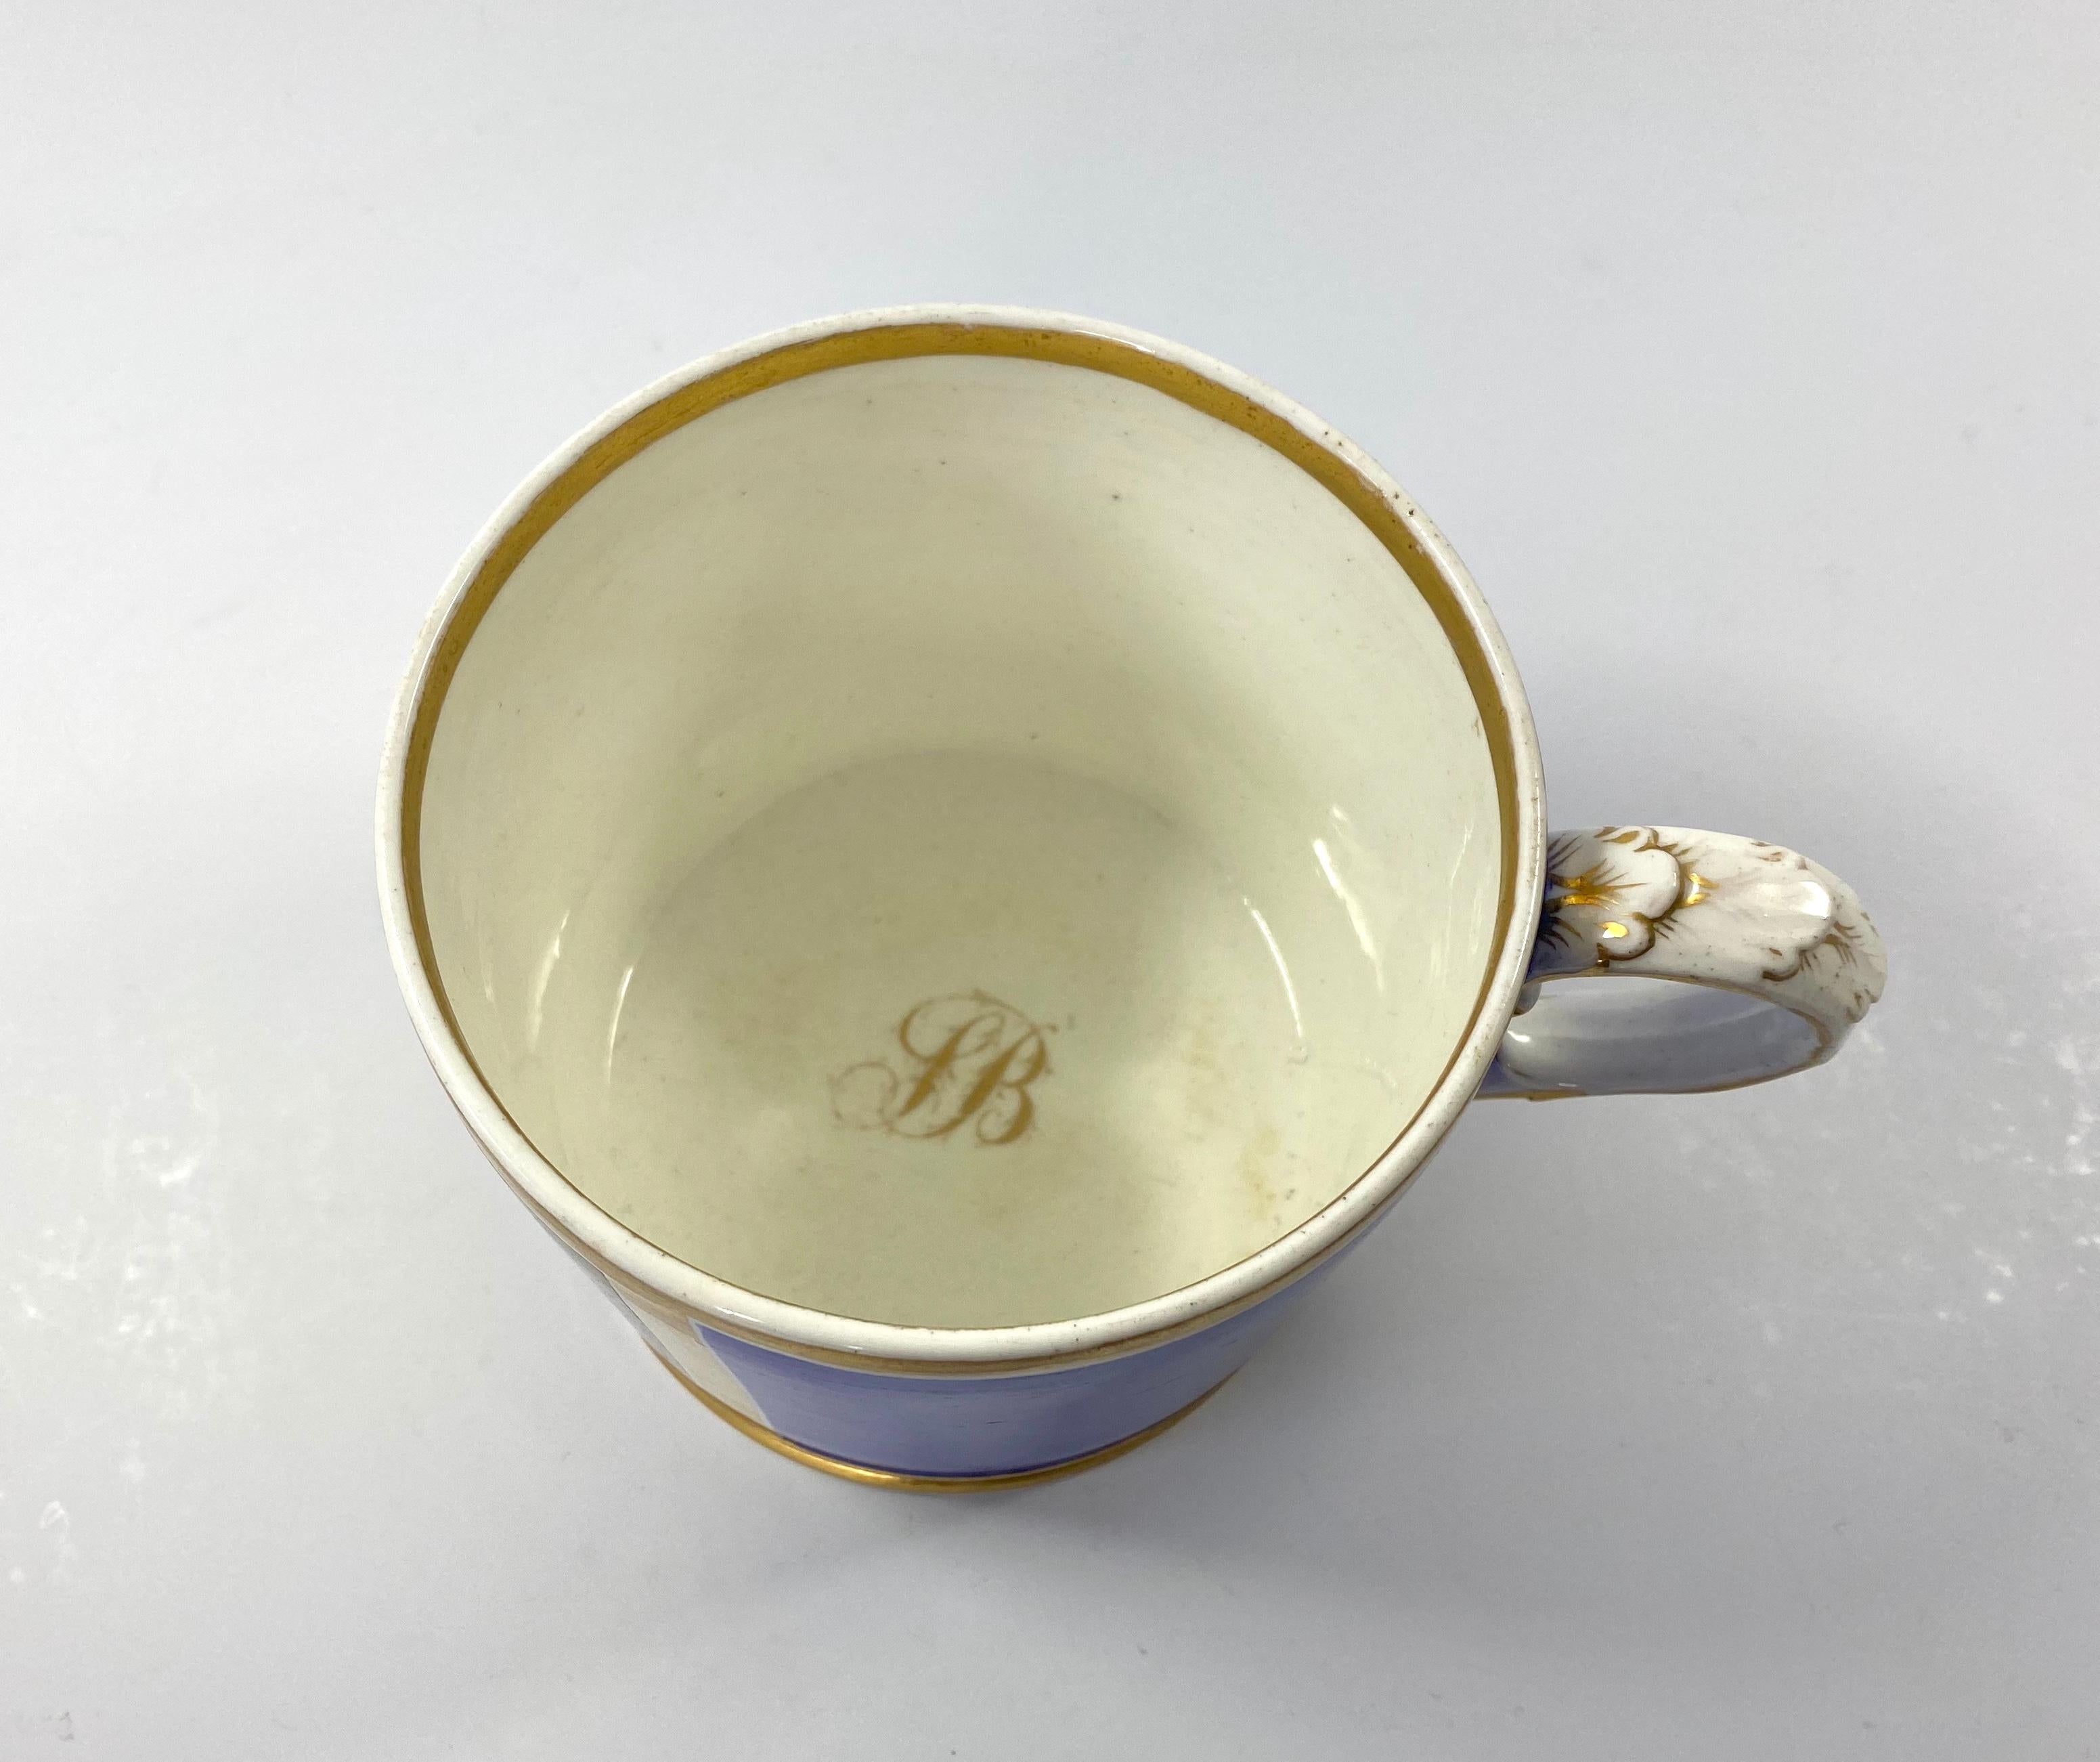 Fired Coalport Porcelain Porter Mug, J.H. Smith, Dated 1820 For Sale